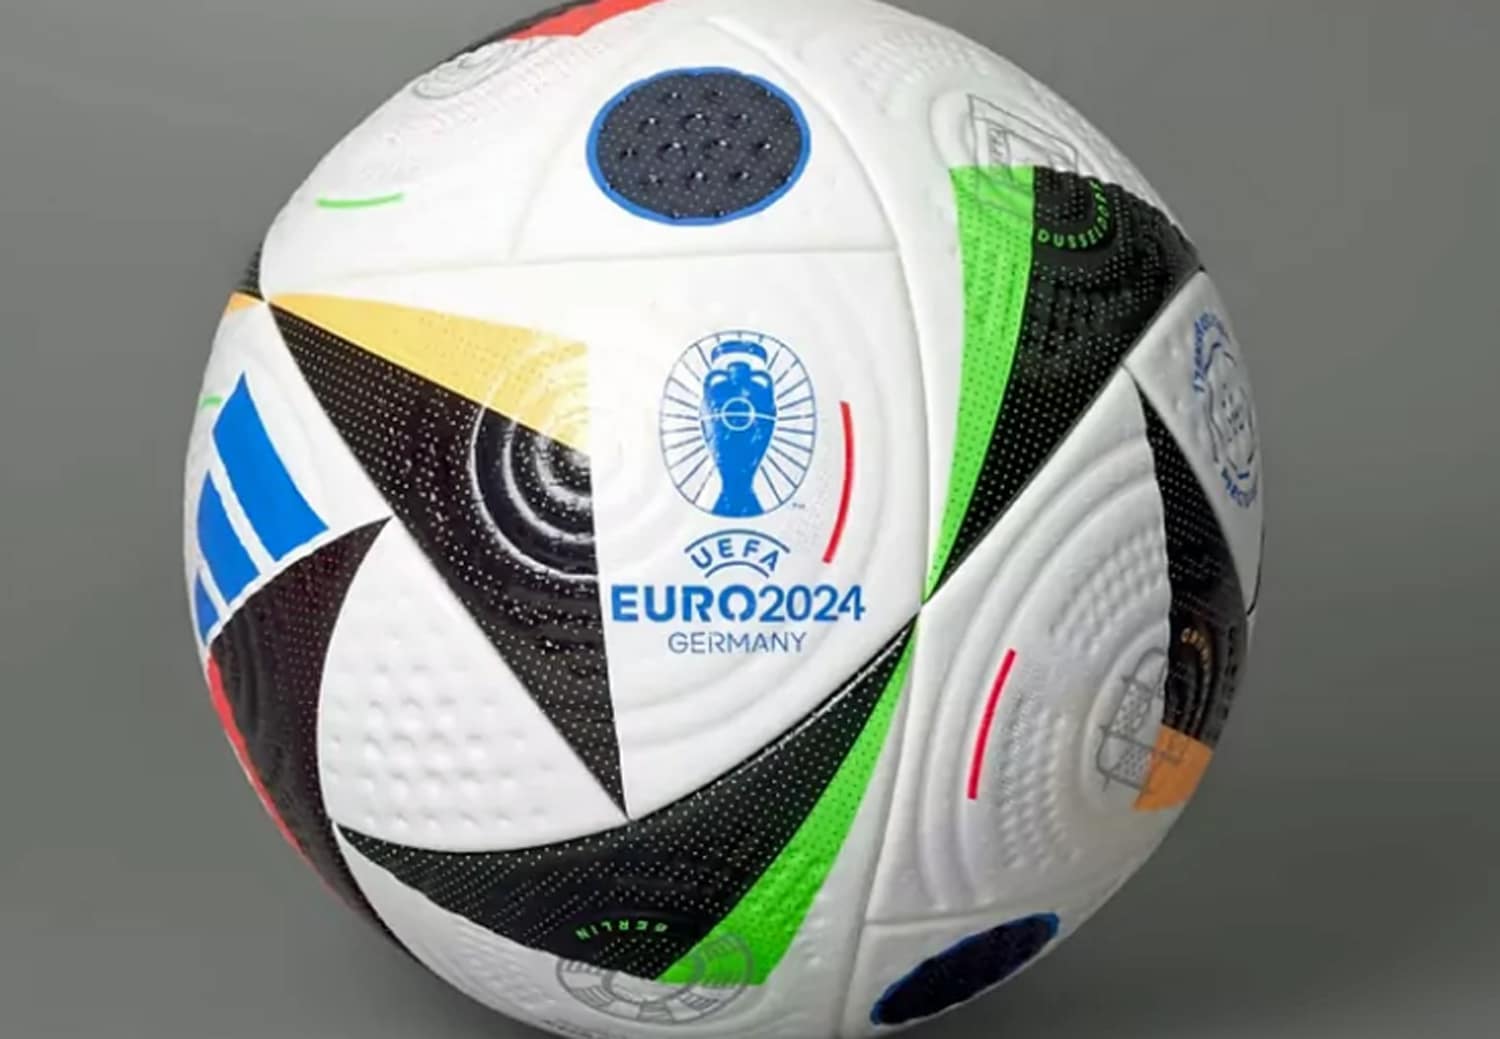 Balón oficial que se utilizará en la edición 2024 de la Euro.